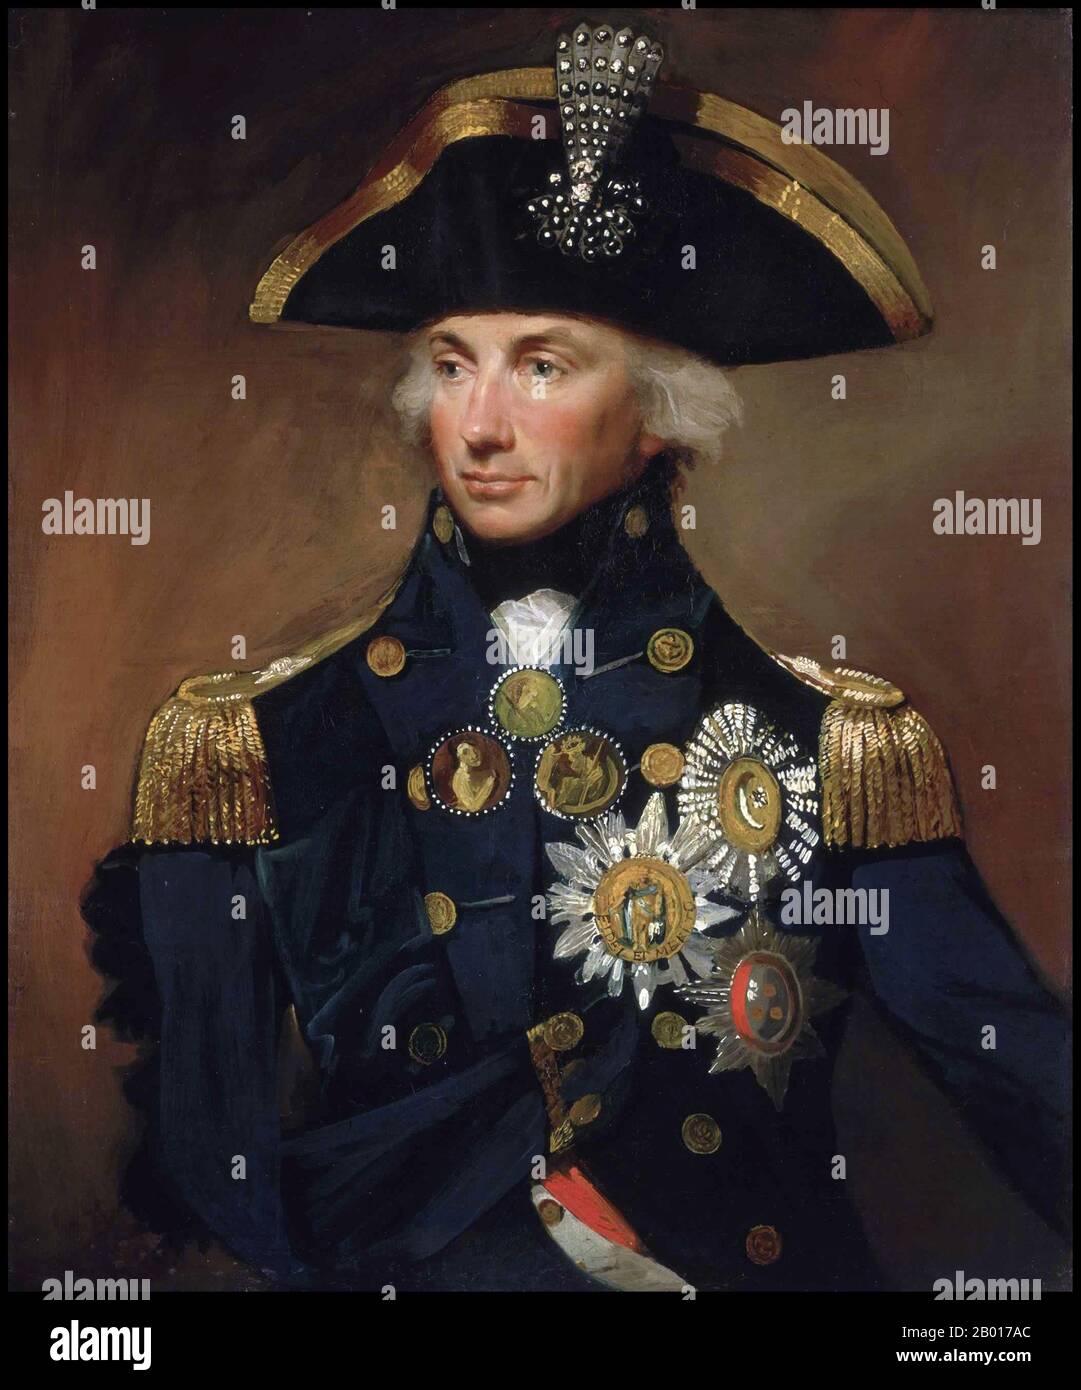 England: 'Admiral Sir Horatio Nelson, 1758-1805'. Öl auf Leinwand, Gemälde von Lemuel Francis Abbott (1760-1802), 1799. Horatio Nelson, 1st Viscount Nelson, 1st Duke of Bronté, KB (29. September 1758 – 21. Oktober 1805) war ein englischer Flaggenoffizier, der für seinen Dienst in der Royal Navy, insbesondere während der Napoleonischen Kriege, berühmt war. Er wurde für seine inspirierende Führung und sein hervorragendes Verständnis für Strategie und unkonventionelle Taktiken bekannt, was zu einer Reihe von entscheidenden Seesiegen führte. Er wurde im Kampf mehrmals verletzt, verlor einen Arm und den Anblick auf einem Auge. Stockfoto